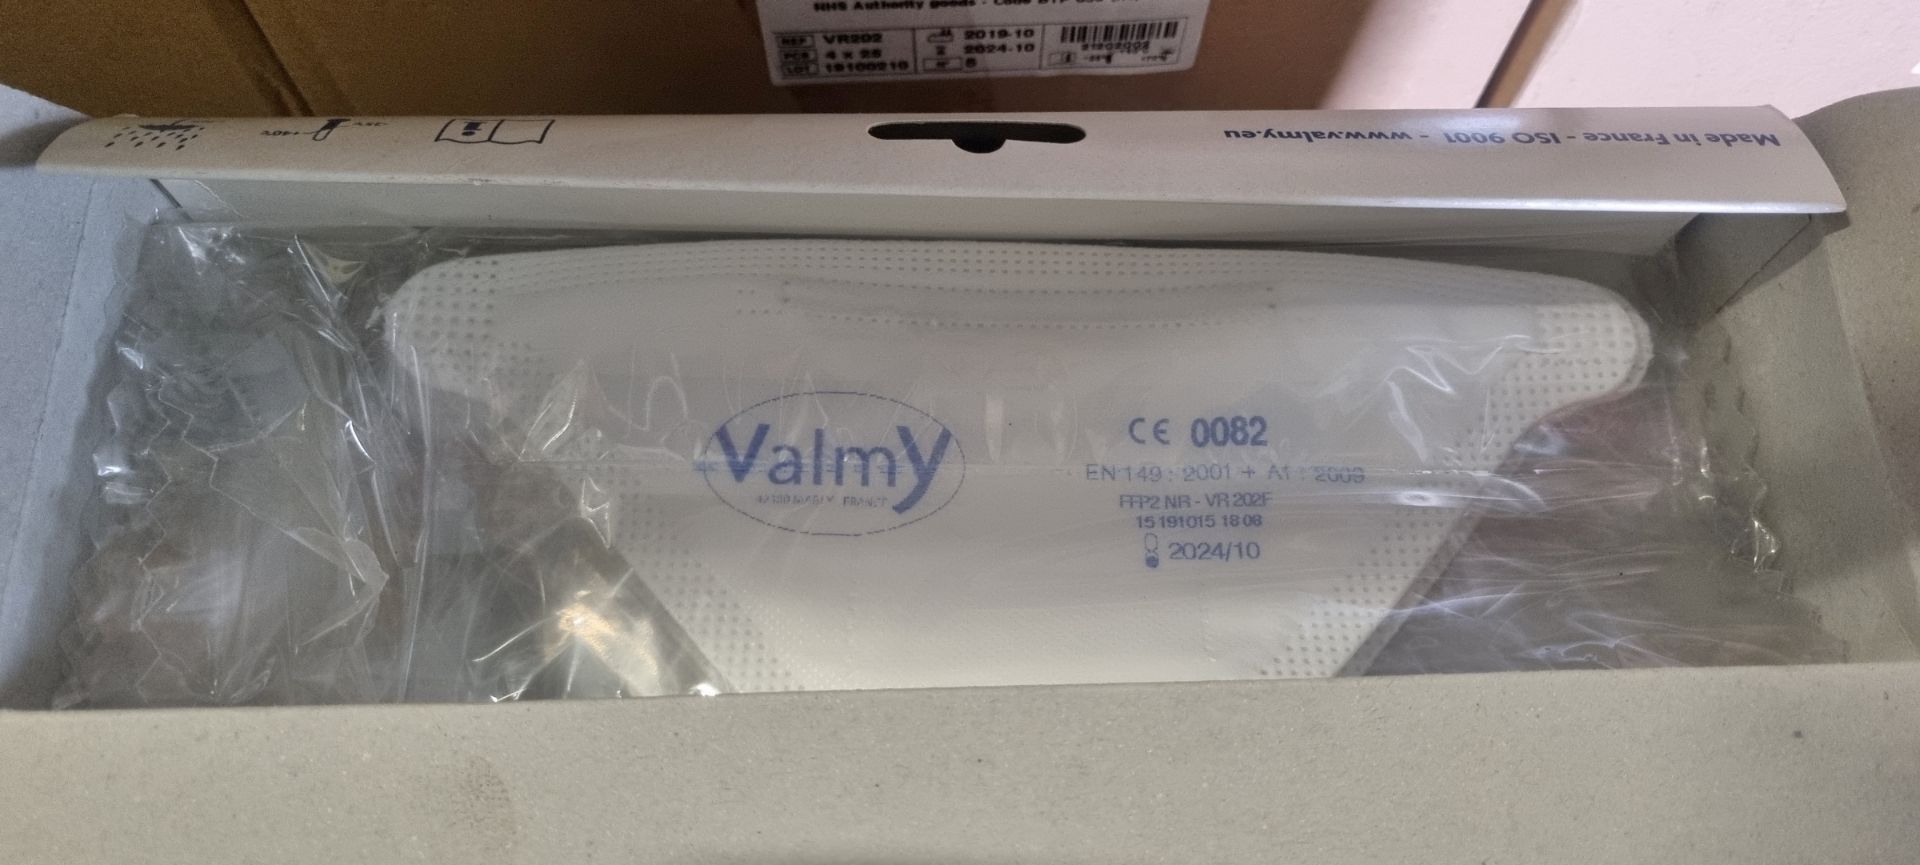 19x boxes of Valmy face masks L 400 x W 290 x H 145mm - 4 packs per box - 25 per pack - Image 4 of 6